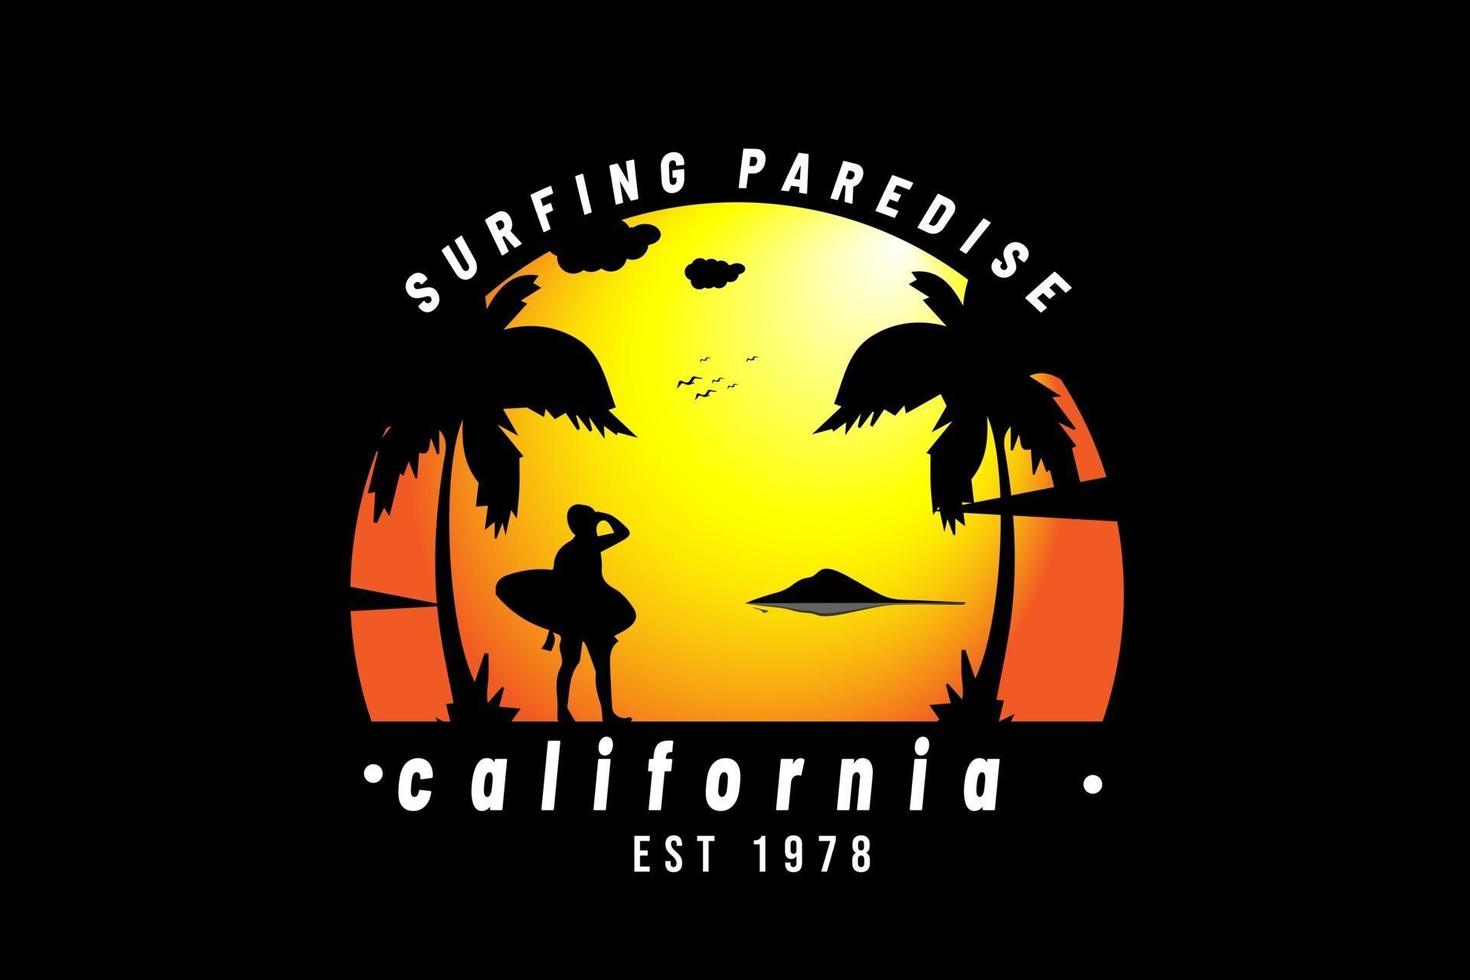 paraíso del surf california est 1978 color naranja y negro vector